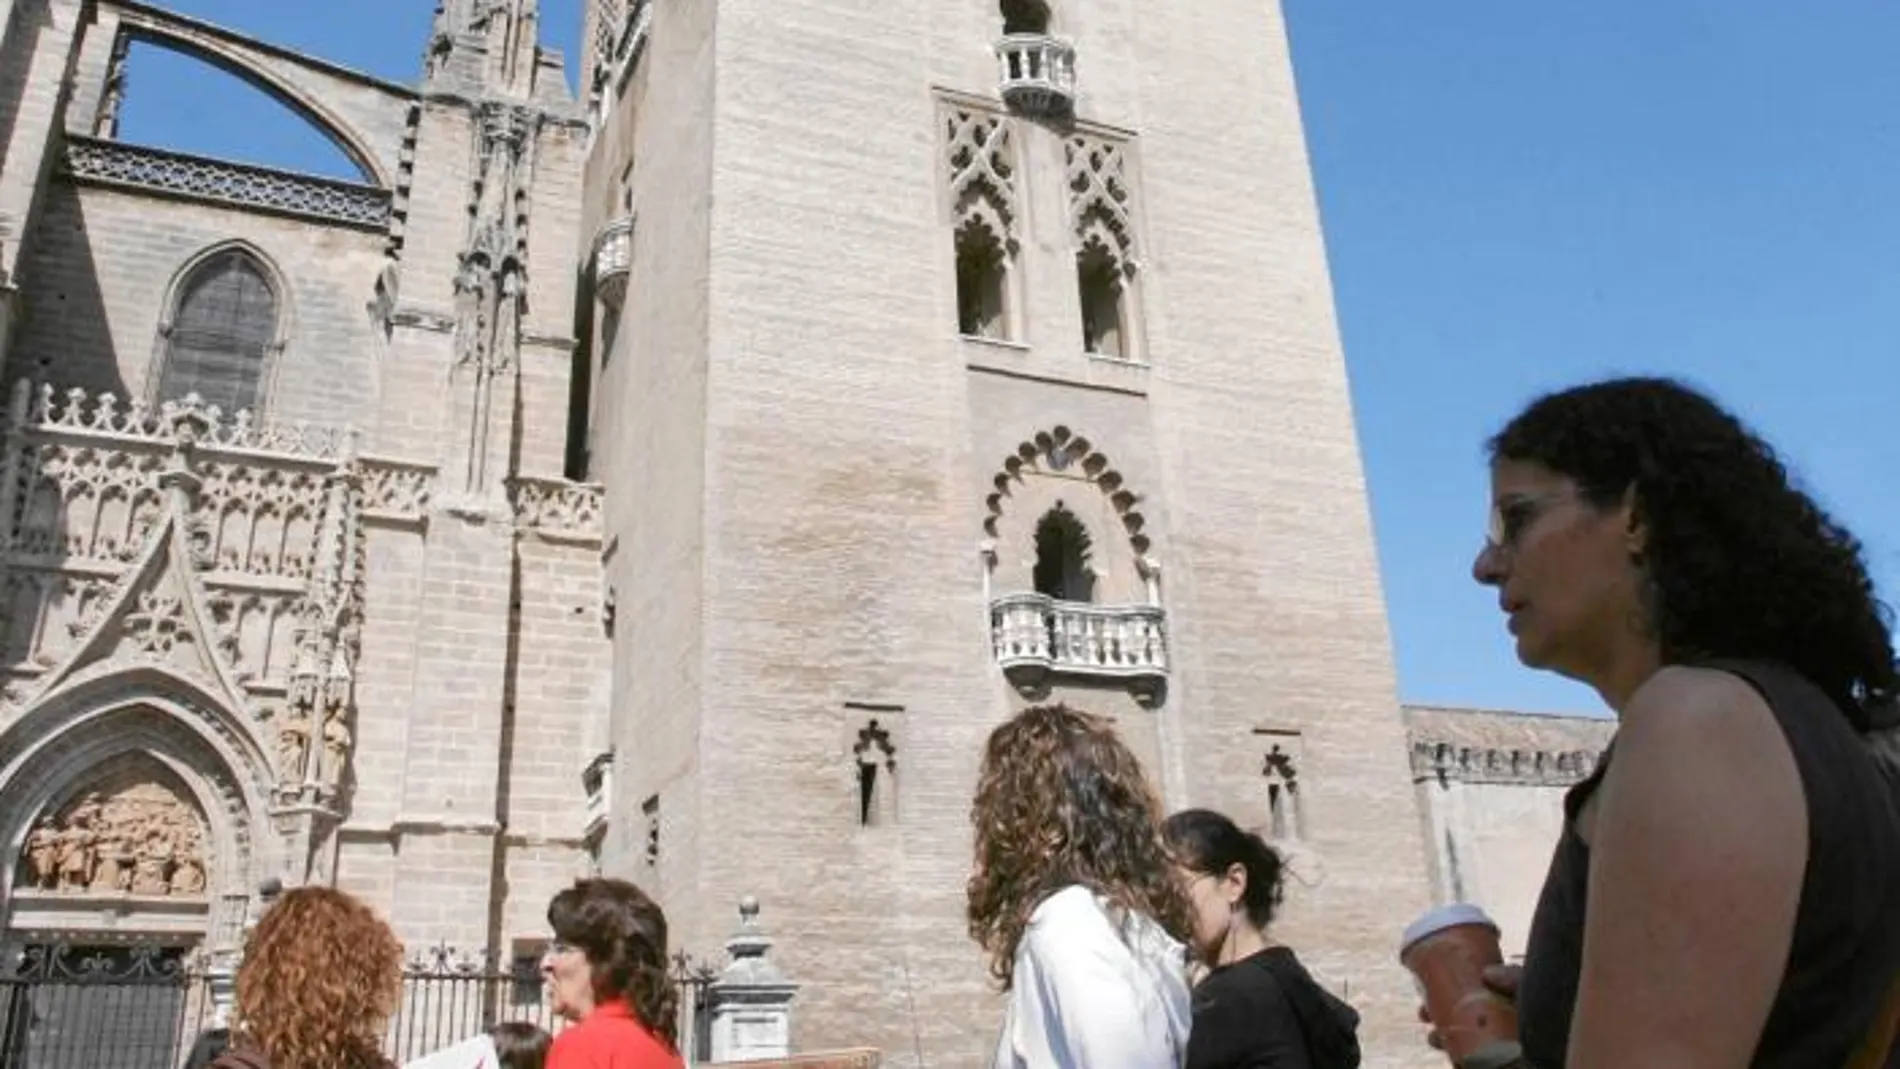 La Giralda, la Catedral y su entorno son una referencia de Sevilla como punto turístico